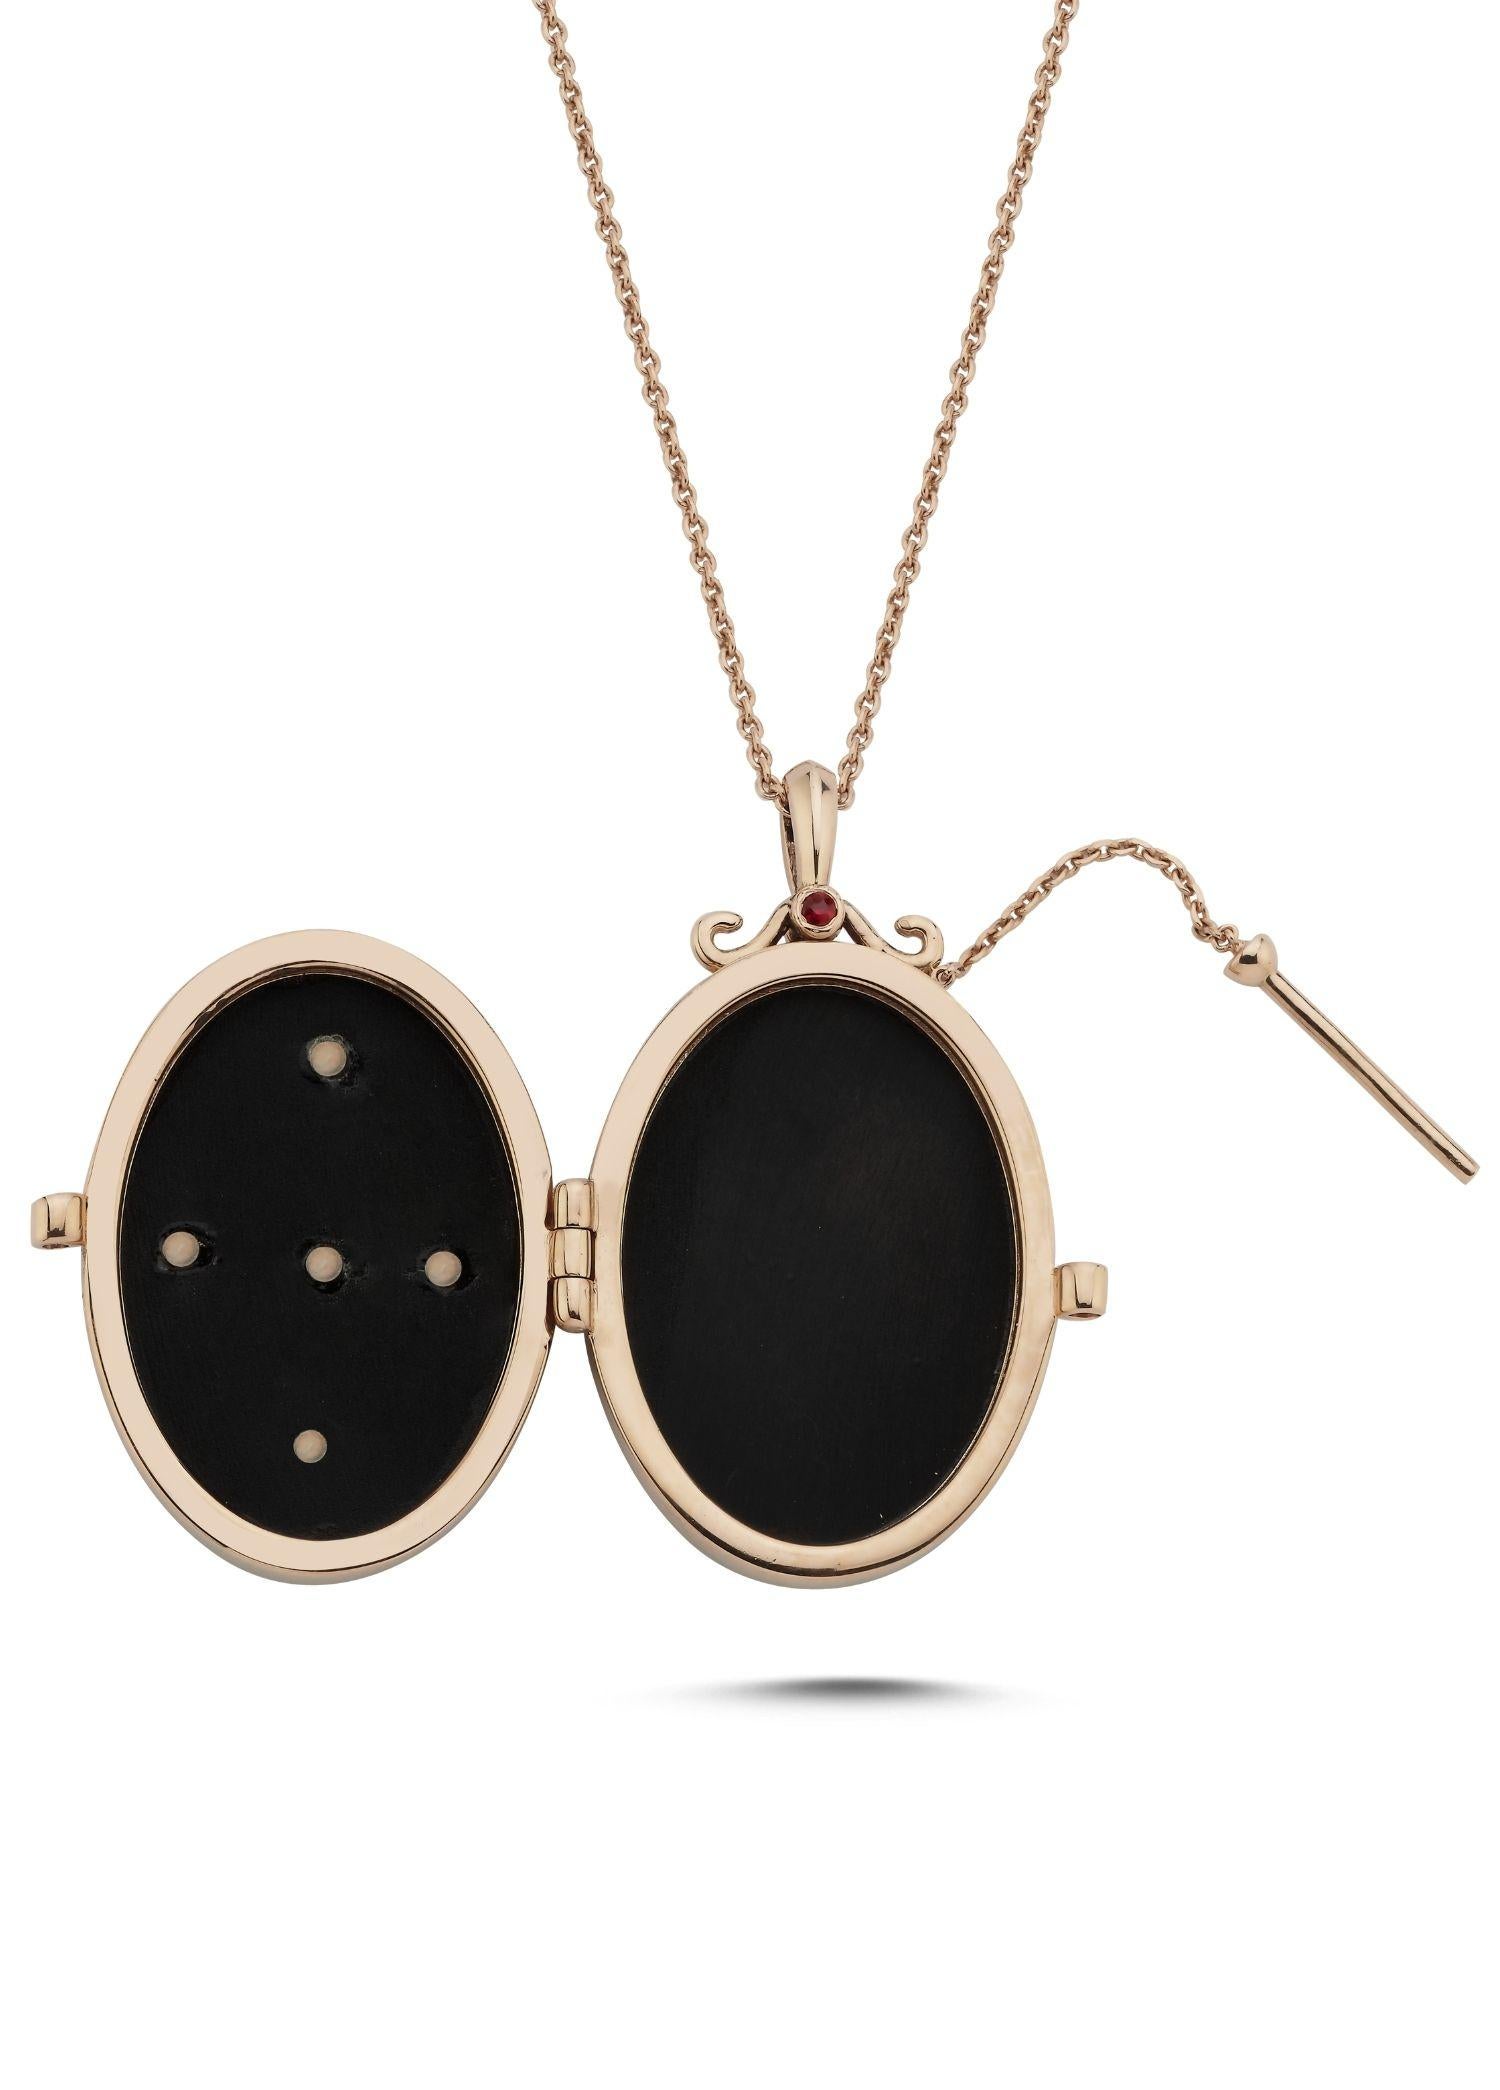 Melie Jewelry - Collier avec boussole en or

Or rose 14K, 0,02 ct diamant blanc/ G-VS, 0,09 ct saphir bleu, 0,16 ct rubis, 0,07 ct émeraude, onyx.
Le collier médaillon est accompagné d'une chaîne dorée de 46 cm.

L'histoire derrière
Le médaillon en